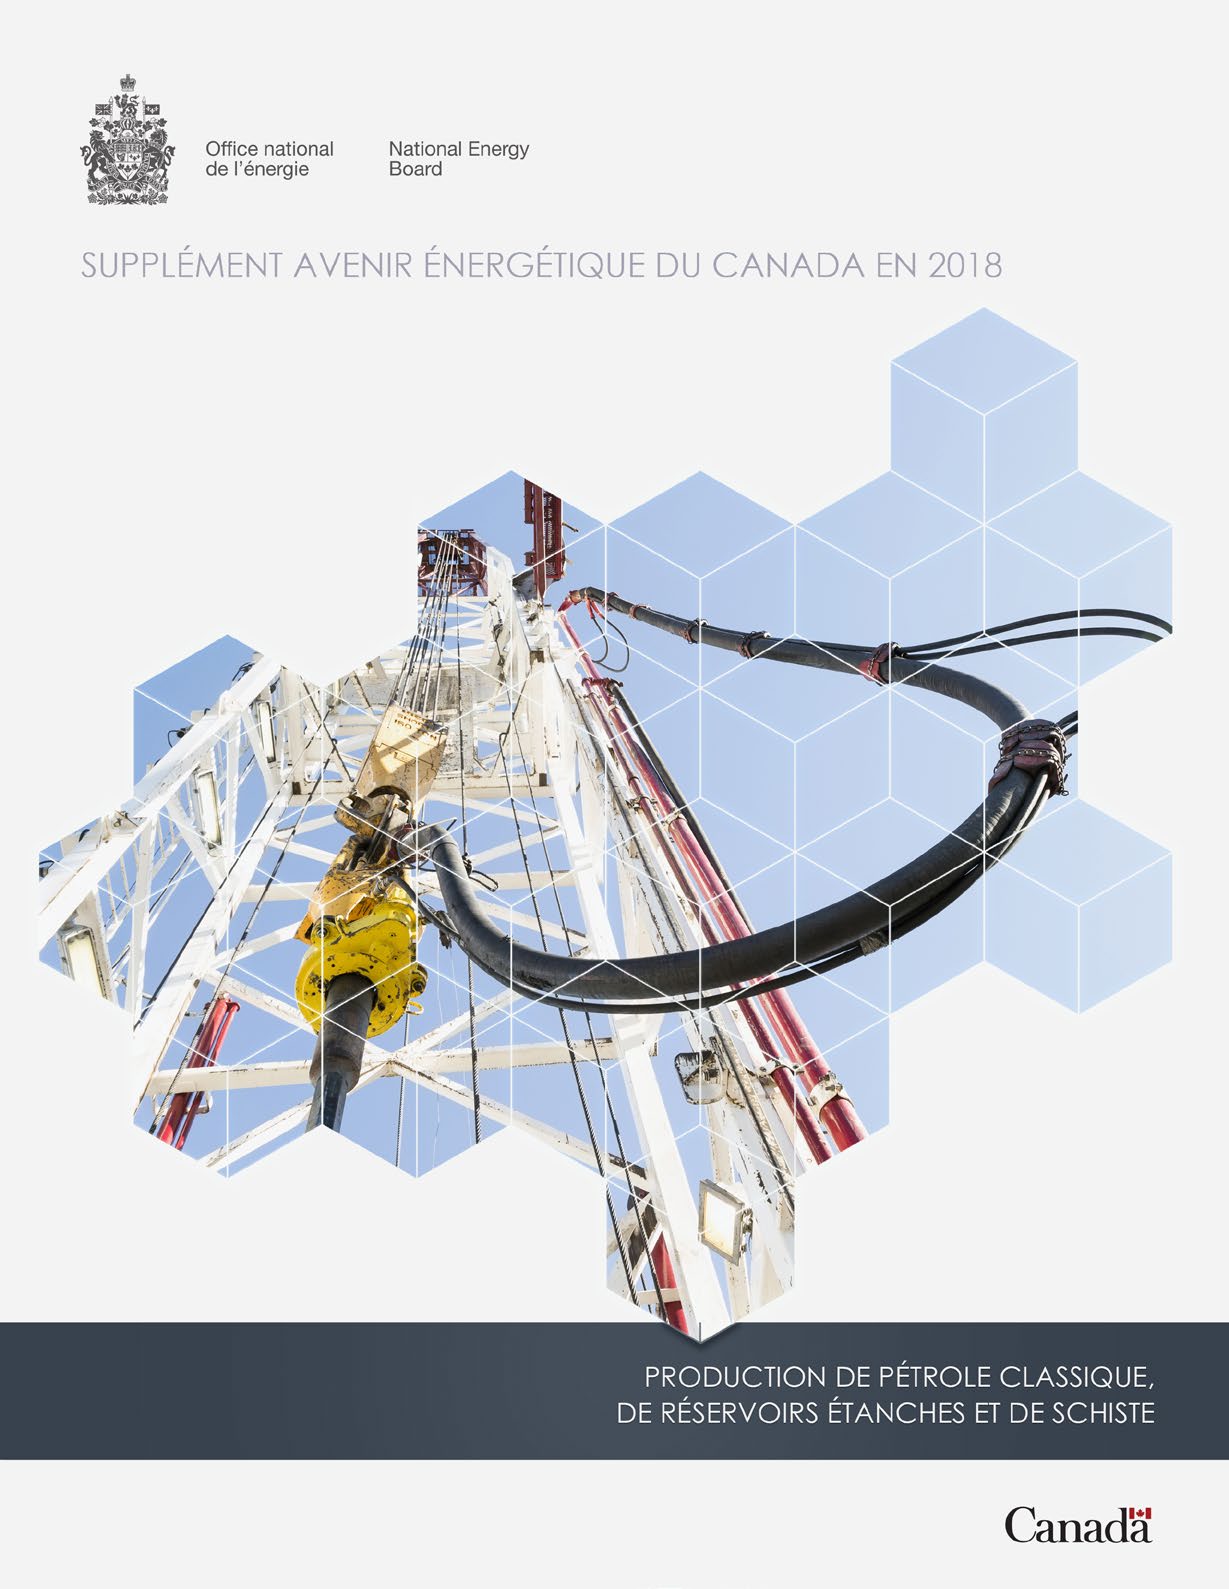 Supplément Avenir énergétique du Canada en 2018 – Production de pétrole classique, de réservoirs étanches et de schiste